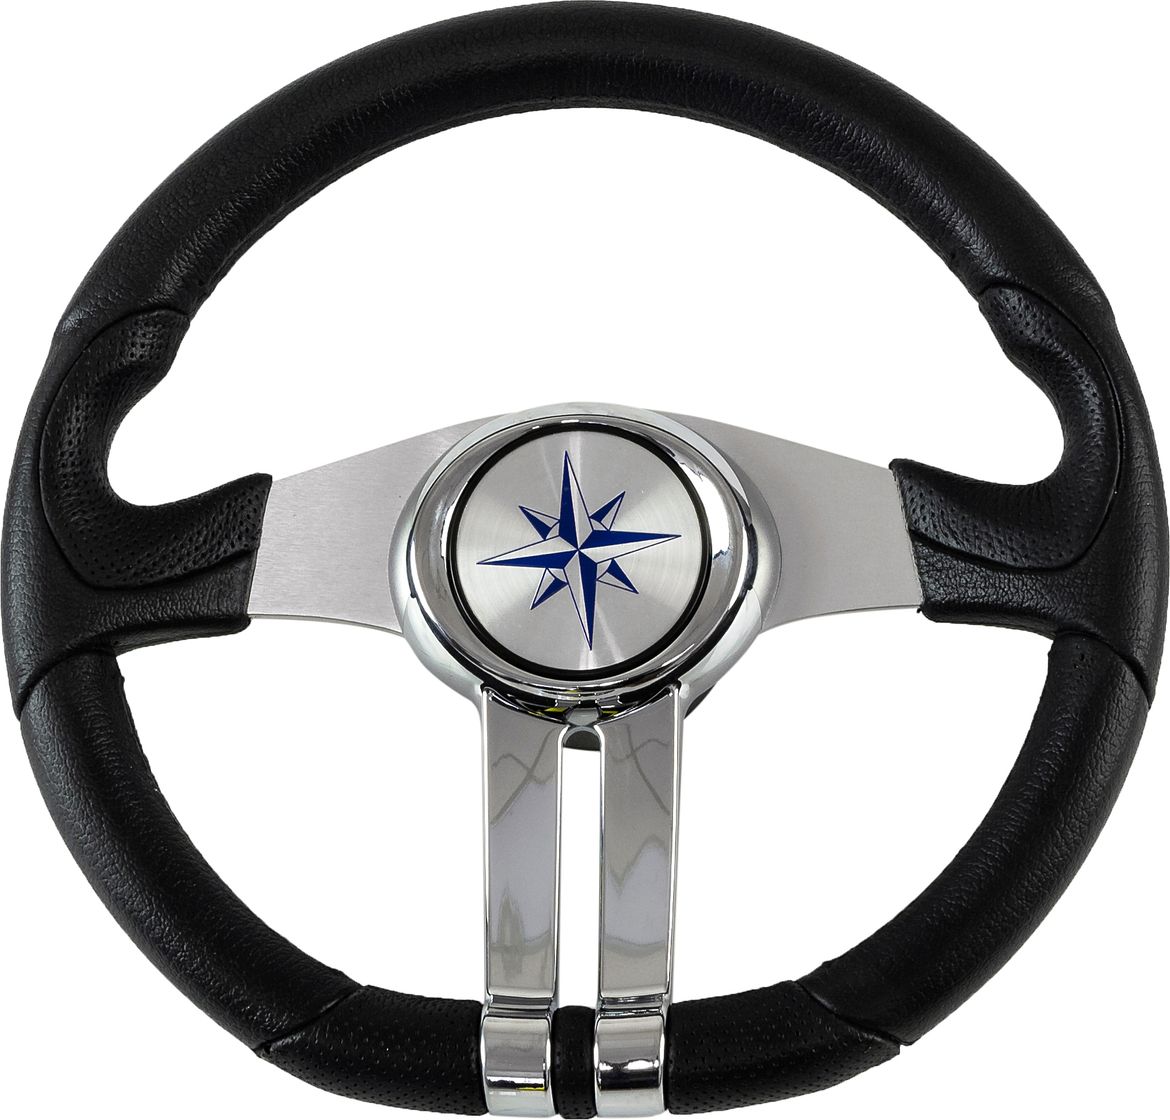 Рулевое колесо BALTIC обод черный, спицы серебряные д. 320 мм VN133203-01 рулевое колесо orion обод черносиний спицы серебряные д 355 мм vn960101 99